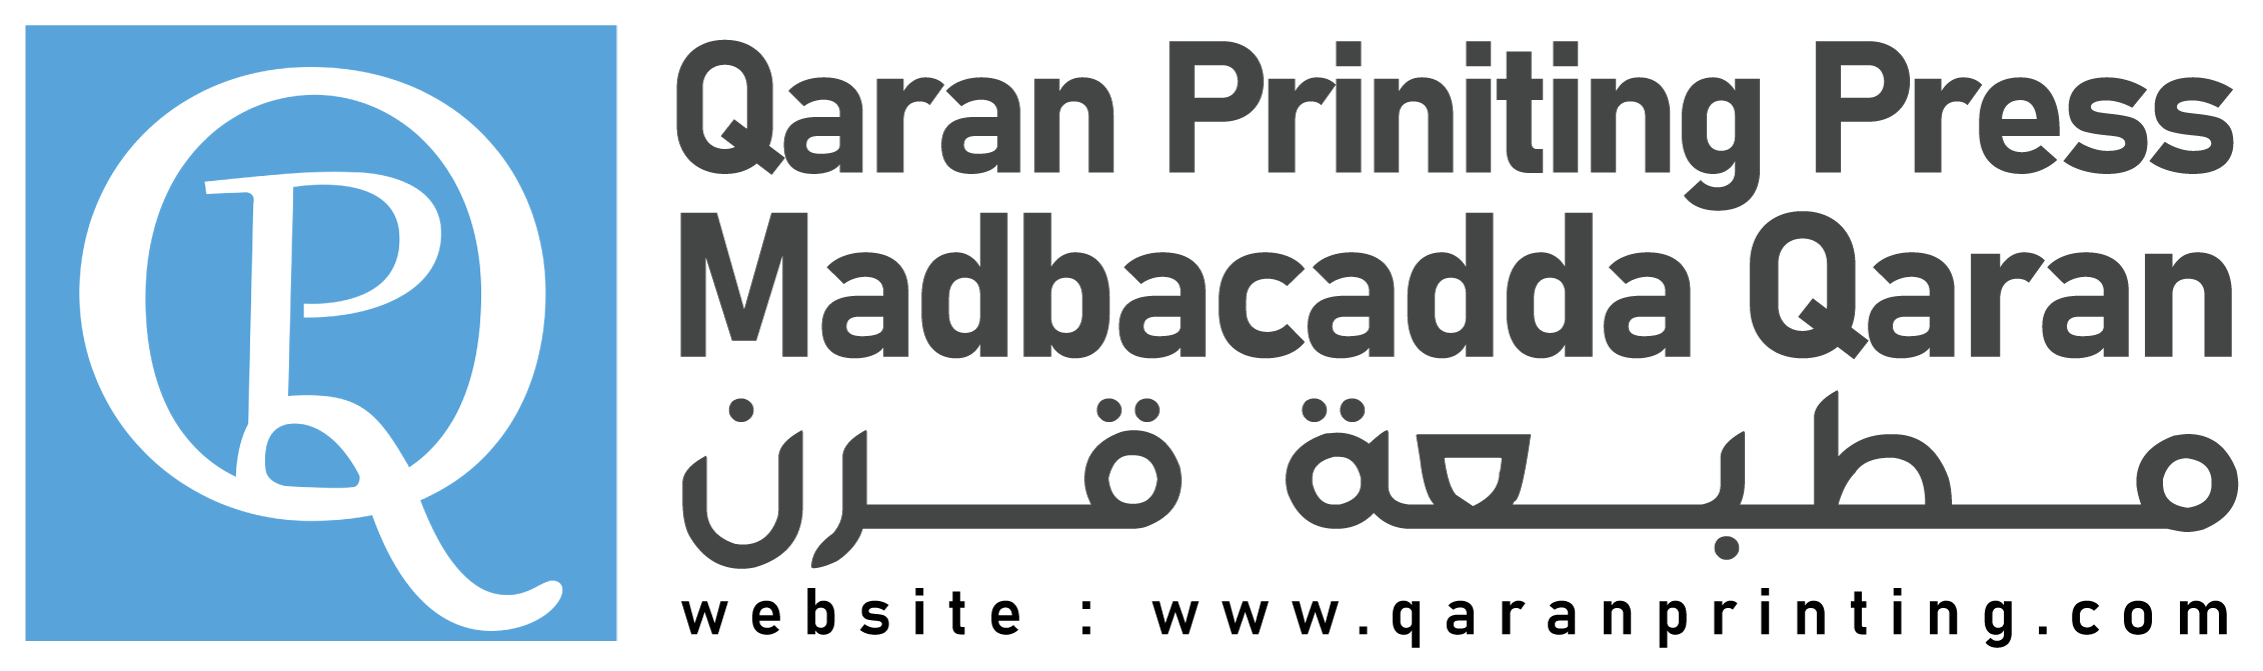 Qaran Printing Press